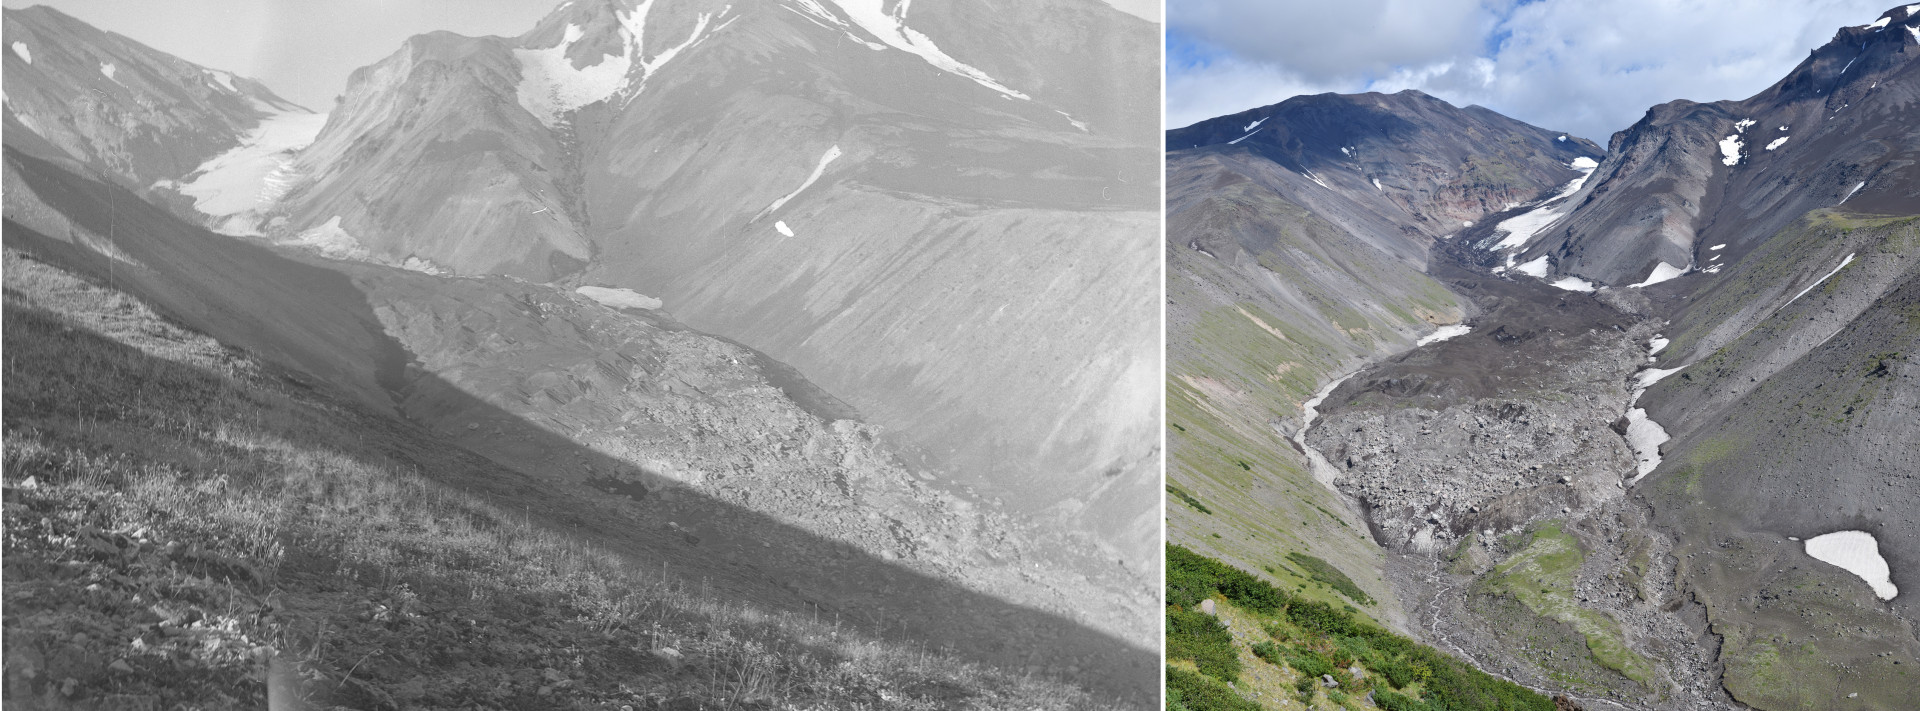 Ледник Козельский на Камчатке. Слева - вид в 1986 году. Справа - вид в 2022 году. Фото: сайт «Архив изображений ледников России»